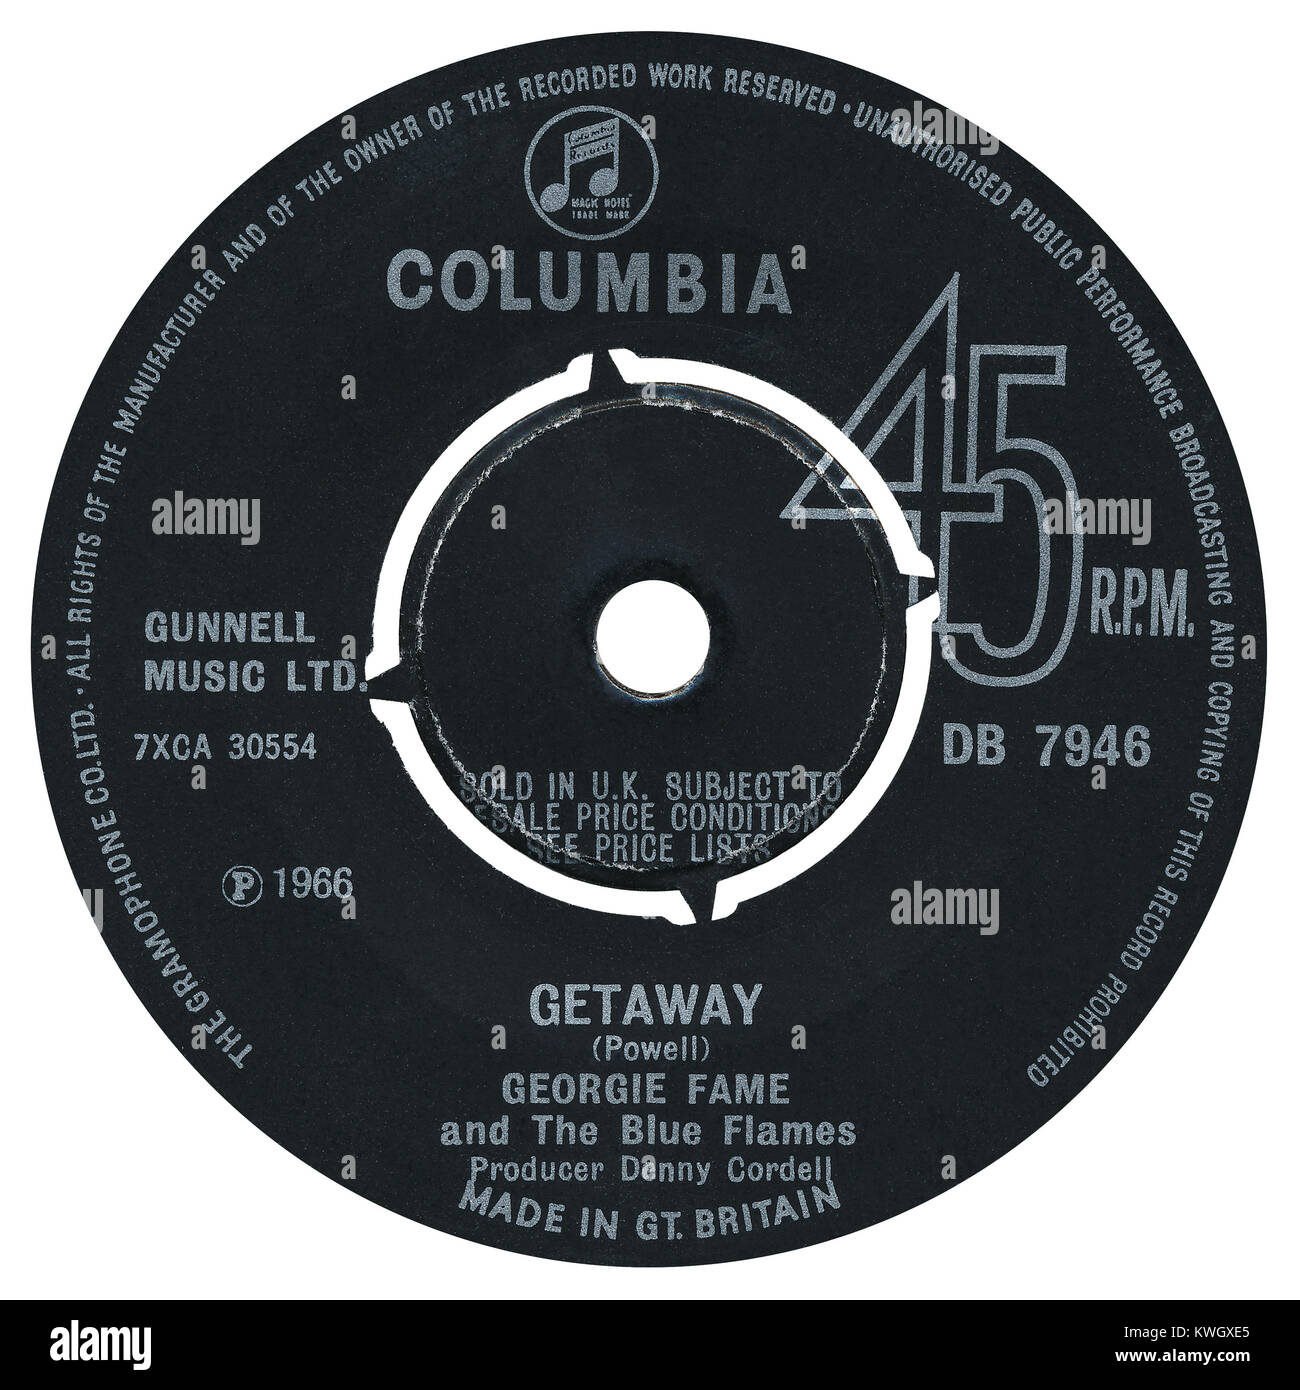 45 RPM 7' UK discográfica de escapada por Georgie Fame y el azul de las llamas. Escrito por Georgie Fame como Clive Powell y producido por Denny Cordell. Lanzado en junio de 1966, por el sello Columbia. Foto de stock